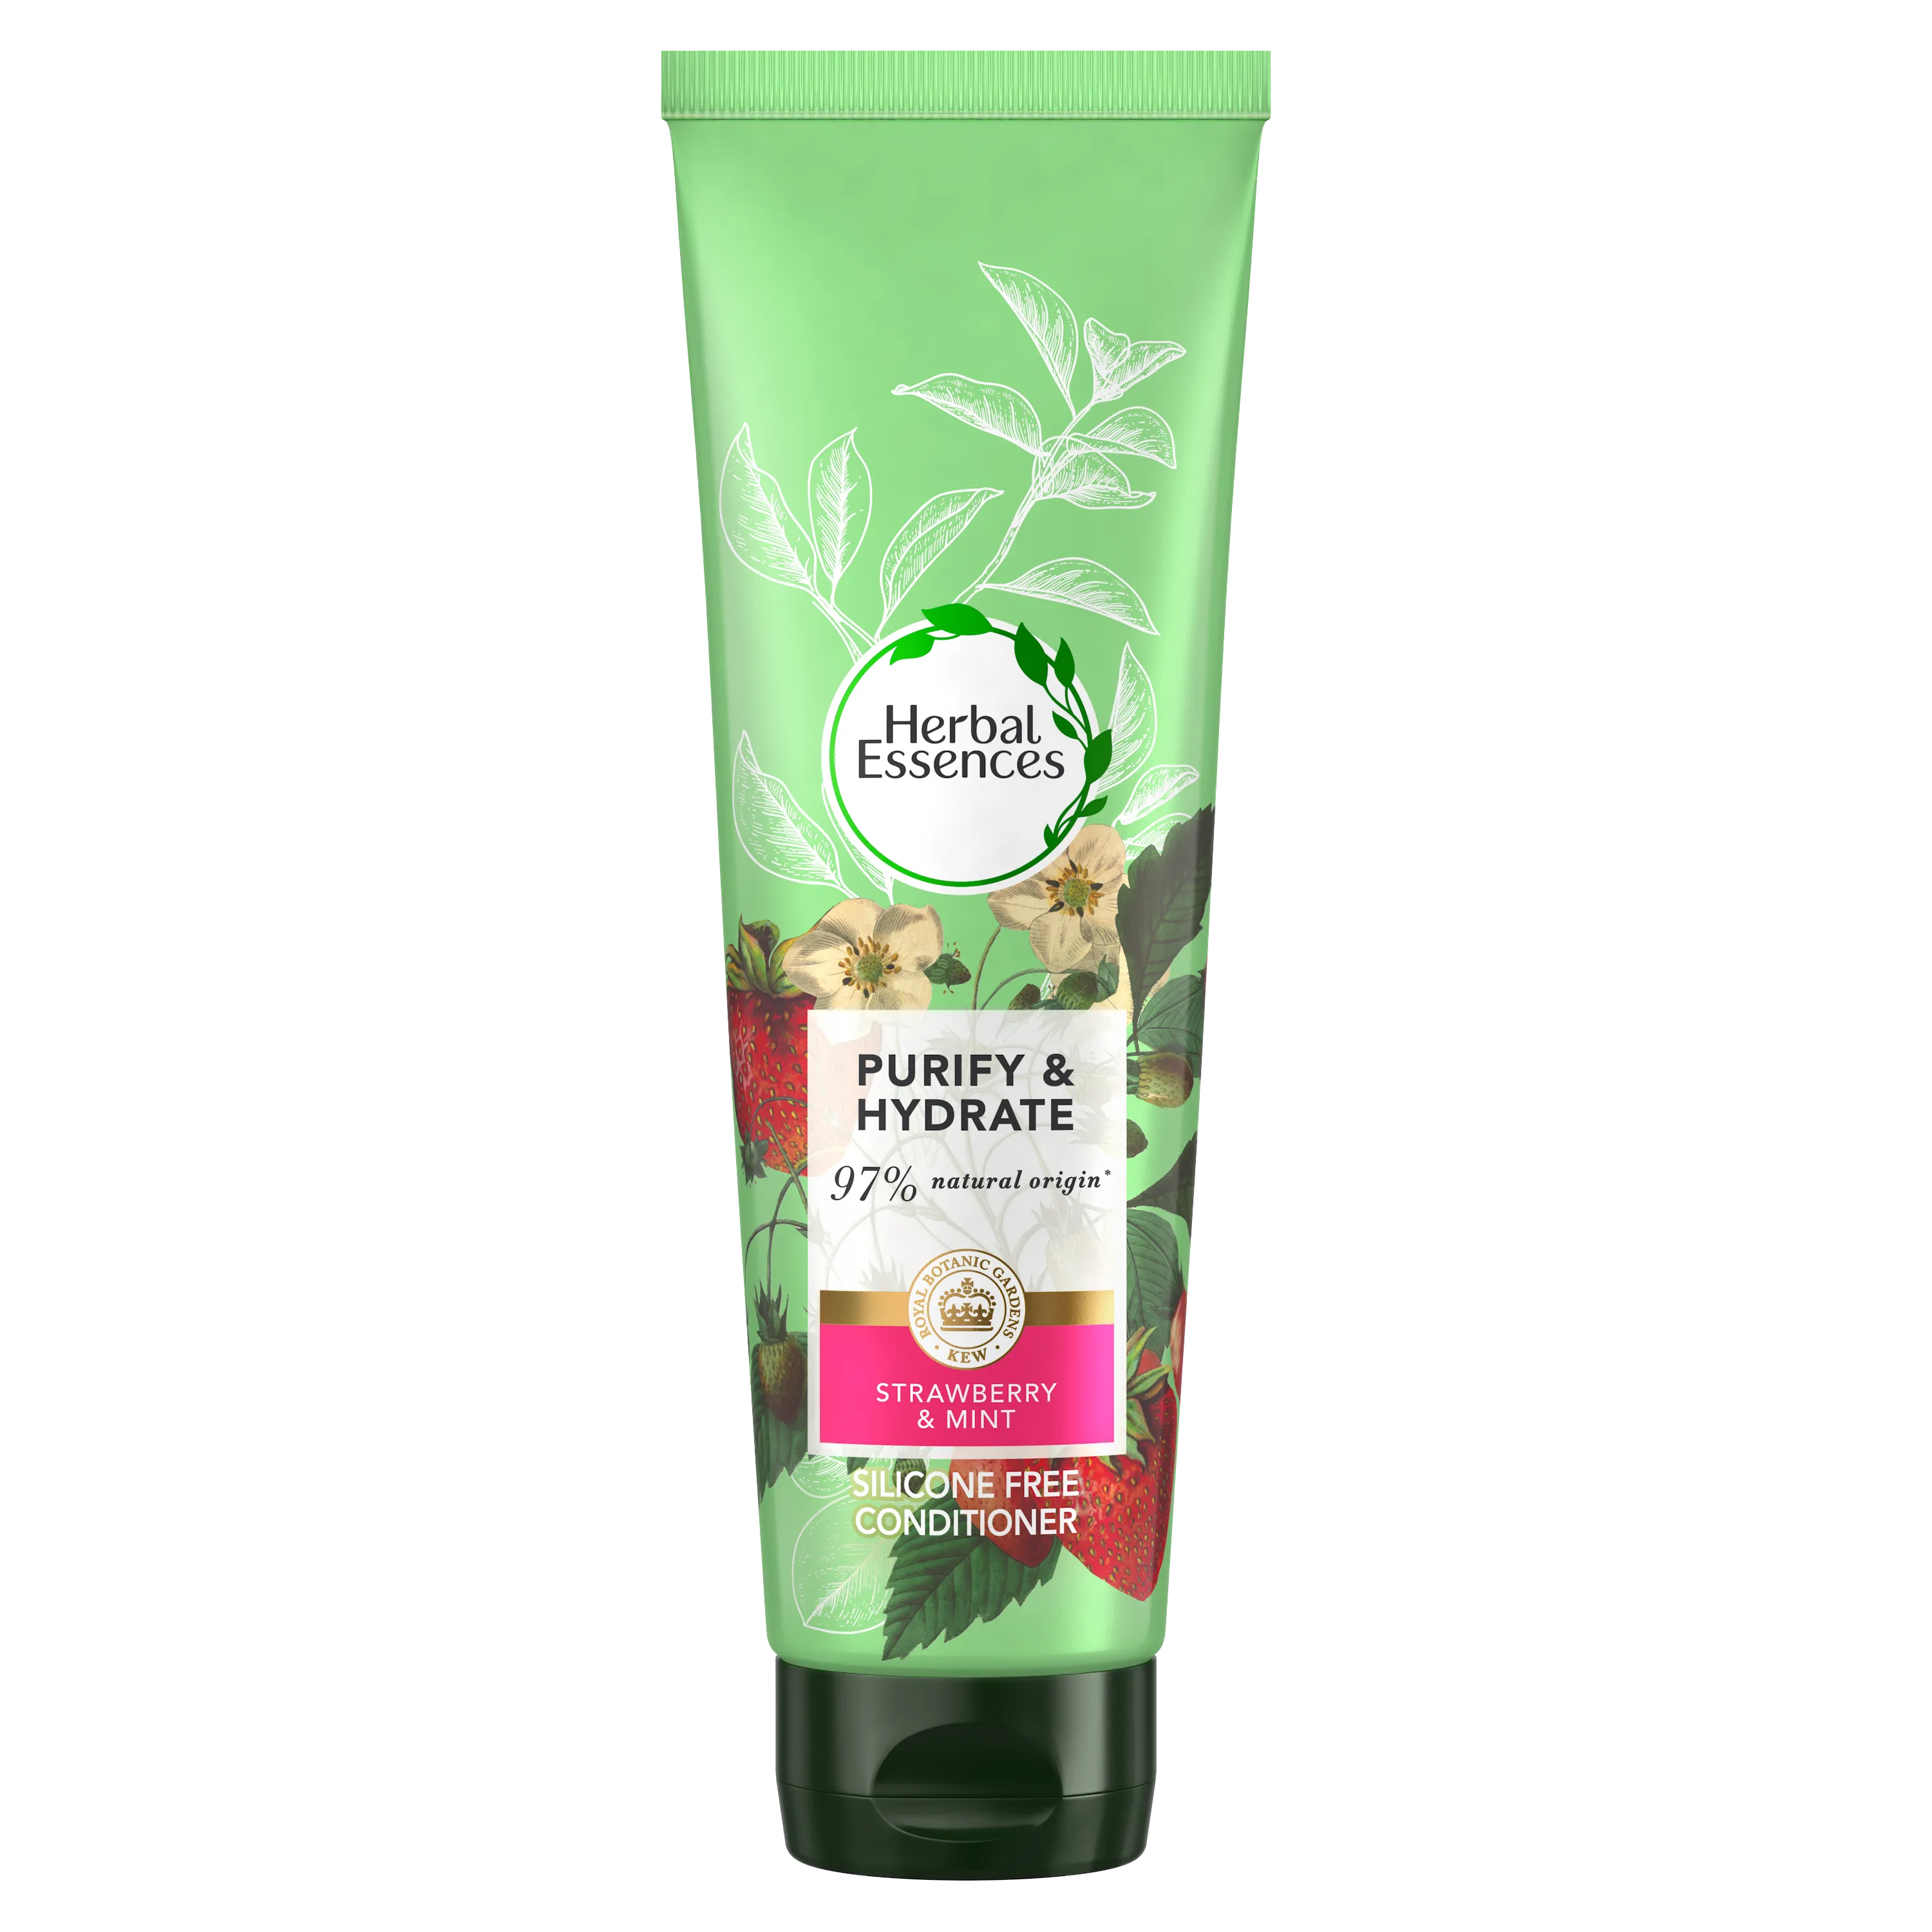 Herbal Essences White Strawberry & Sweet Mint odżywka do włosów, 275 ml